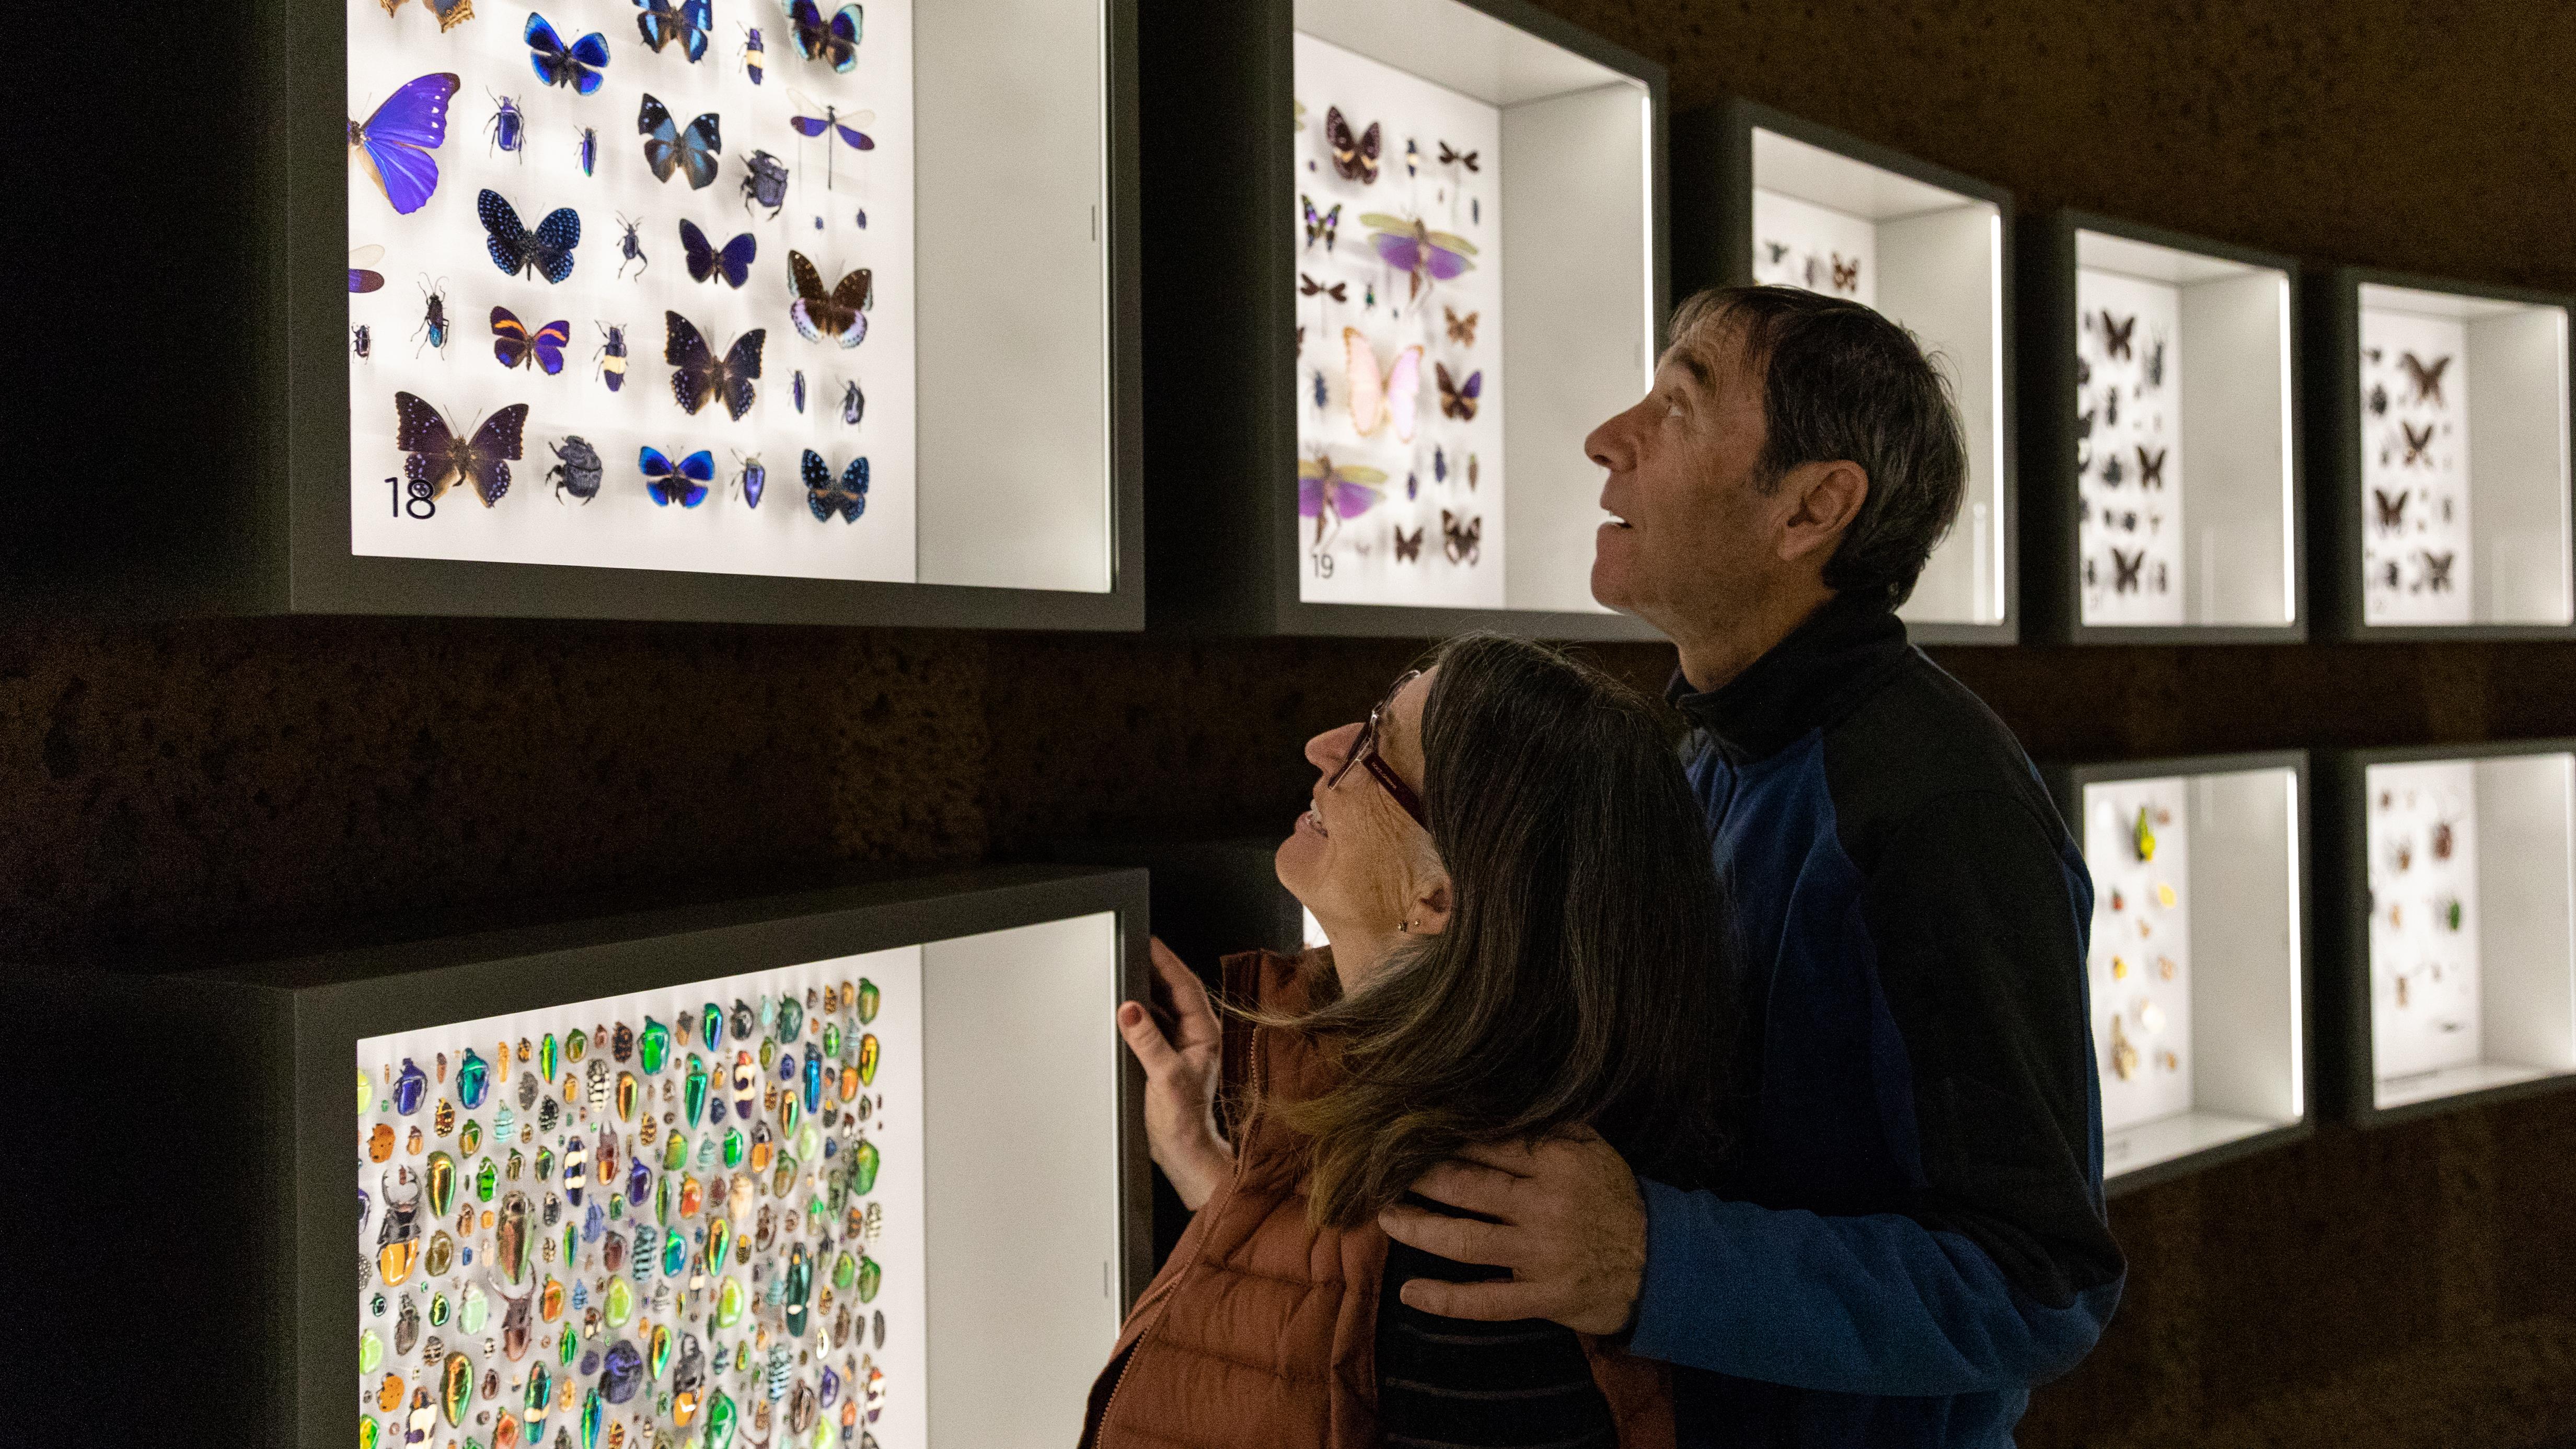 Entrevue avec Maxim Larrivée : L’Insectarium de Montréal fait peau neuve
Entrevue avec Maxim Larrivée : L’Insectarium de Montréal fait peau neuve